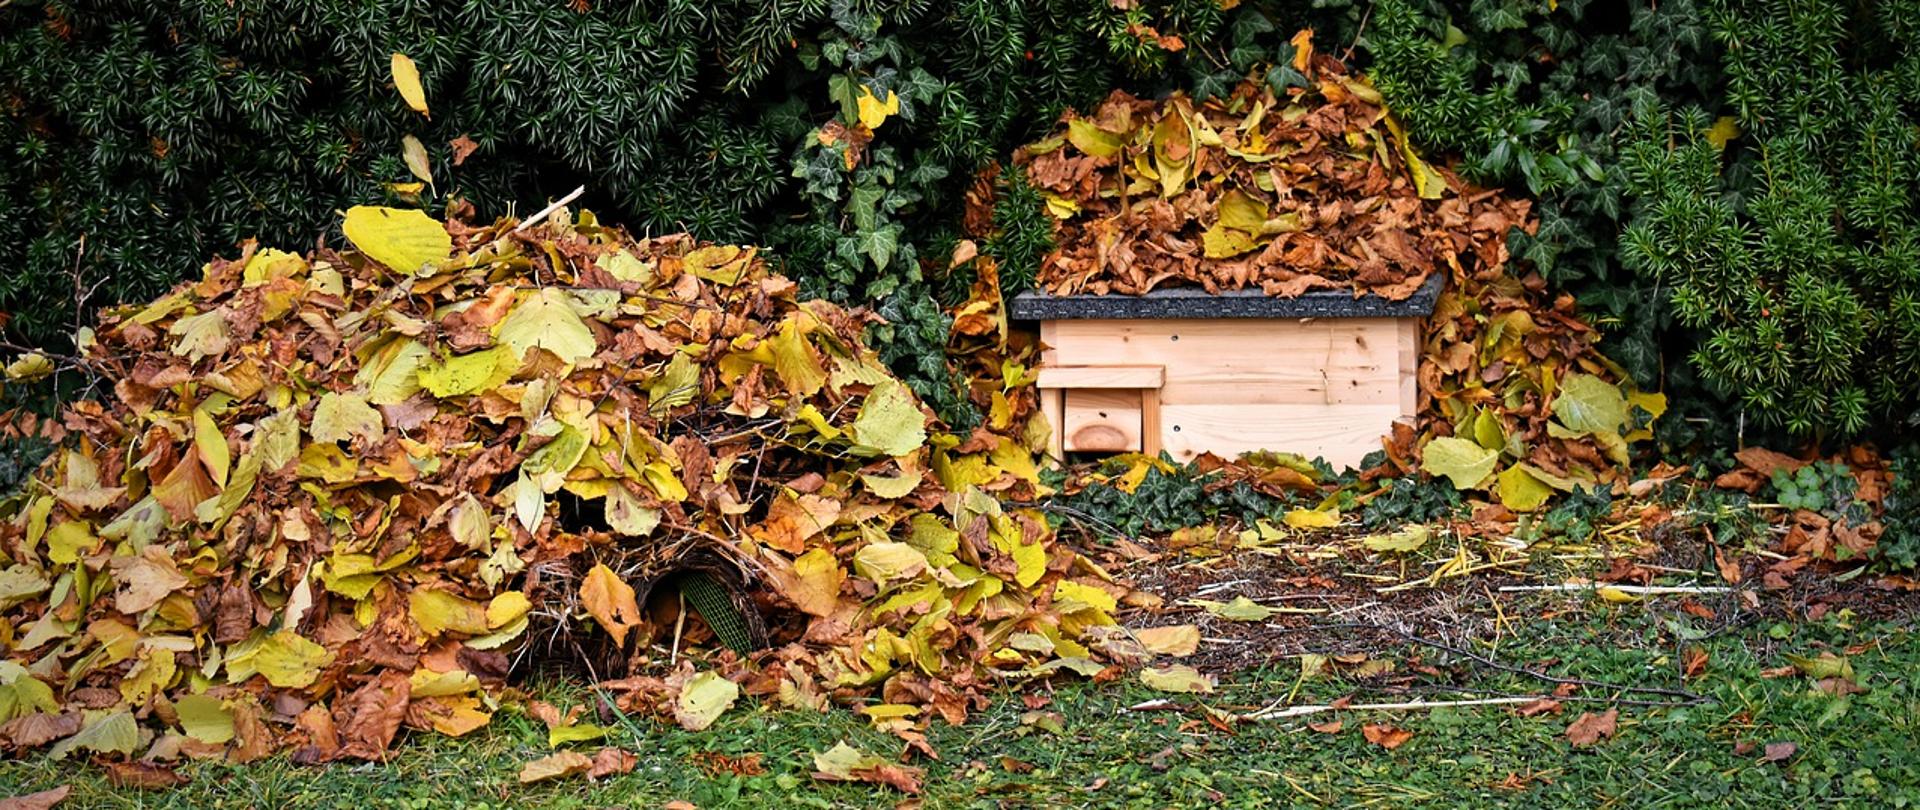 Zdjęcie przedstawia dwie usypane sterty uschniętych liście, w jednej ze stert ukryty mały domek dla jeży